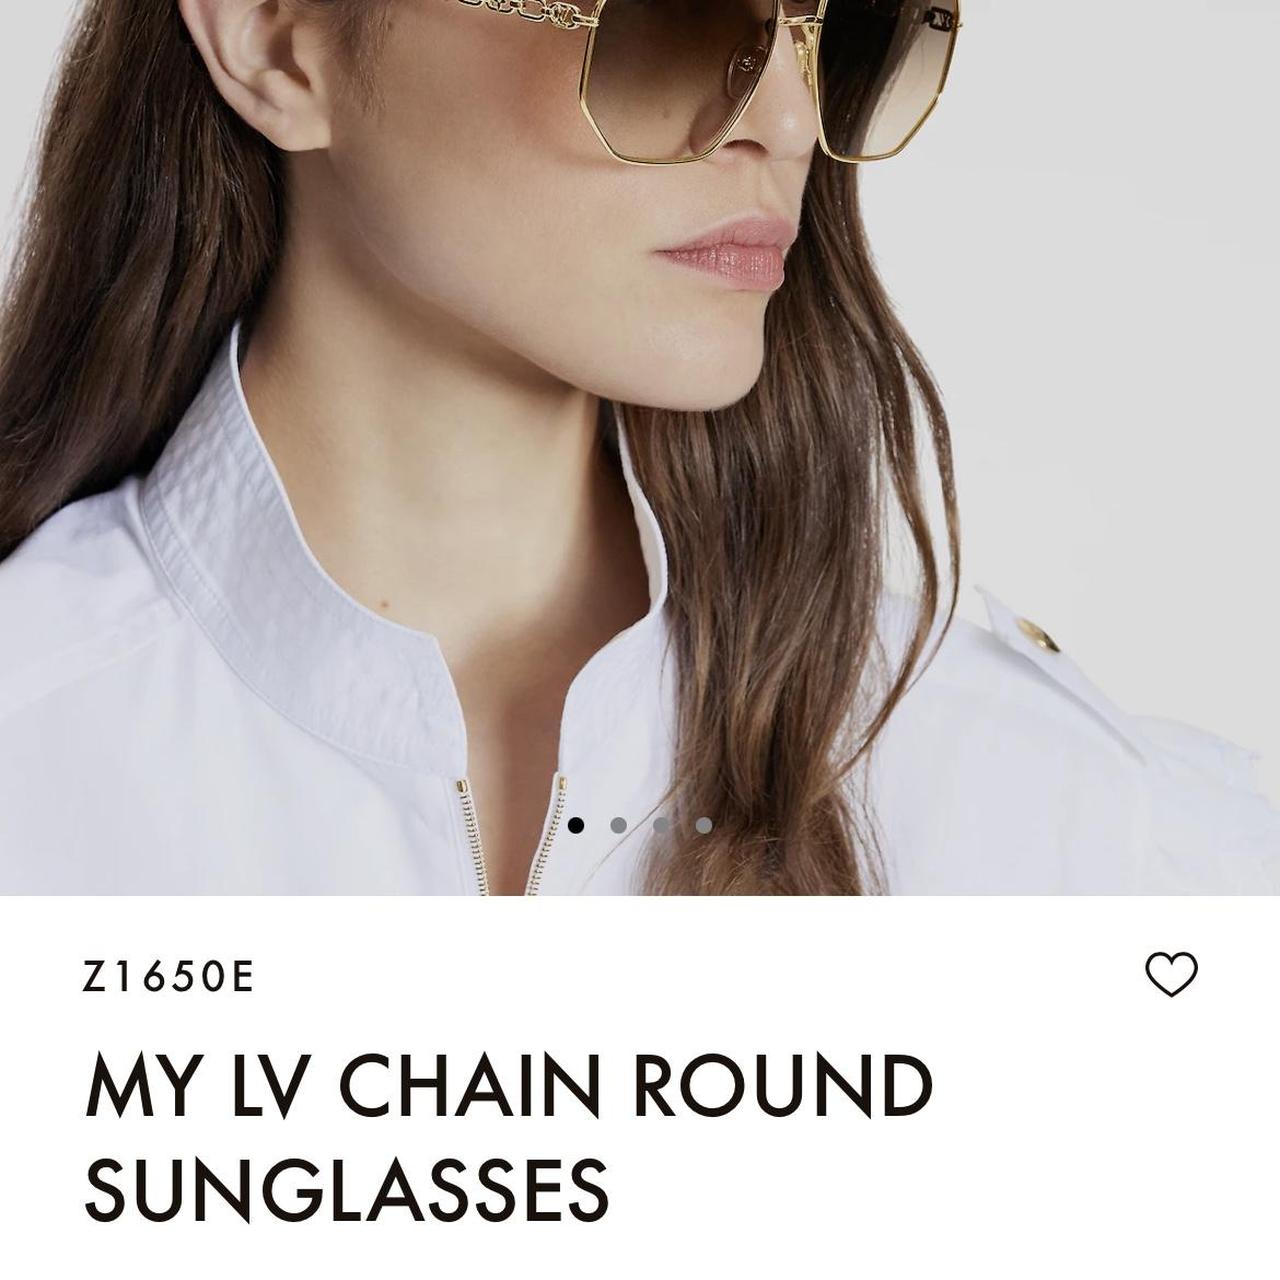 my lv chain round sunglasses